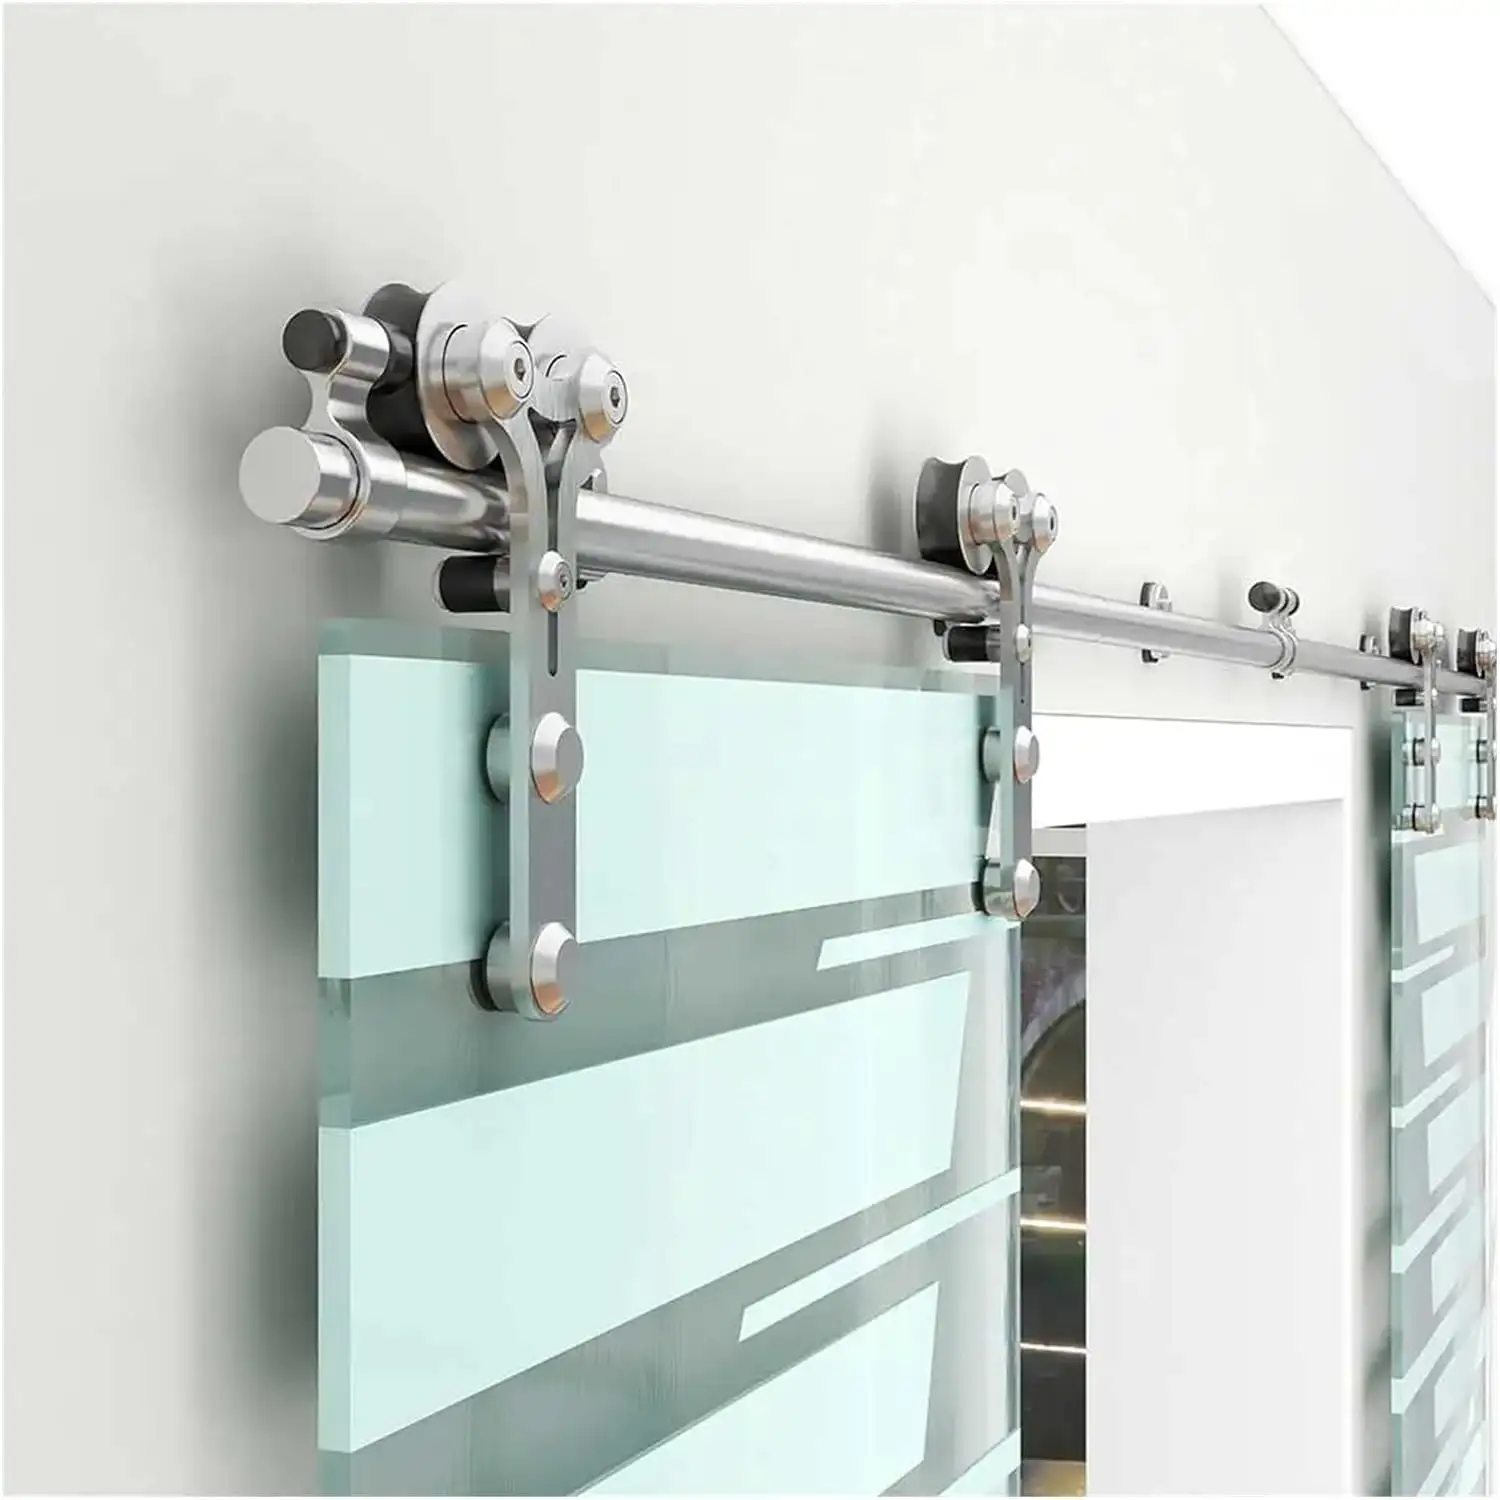 USA moderner Stil Stalltür bausatz Edelstahl schiebetür hardware badezimmer glastür